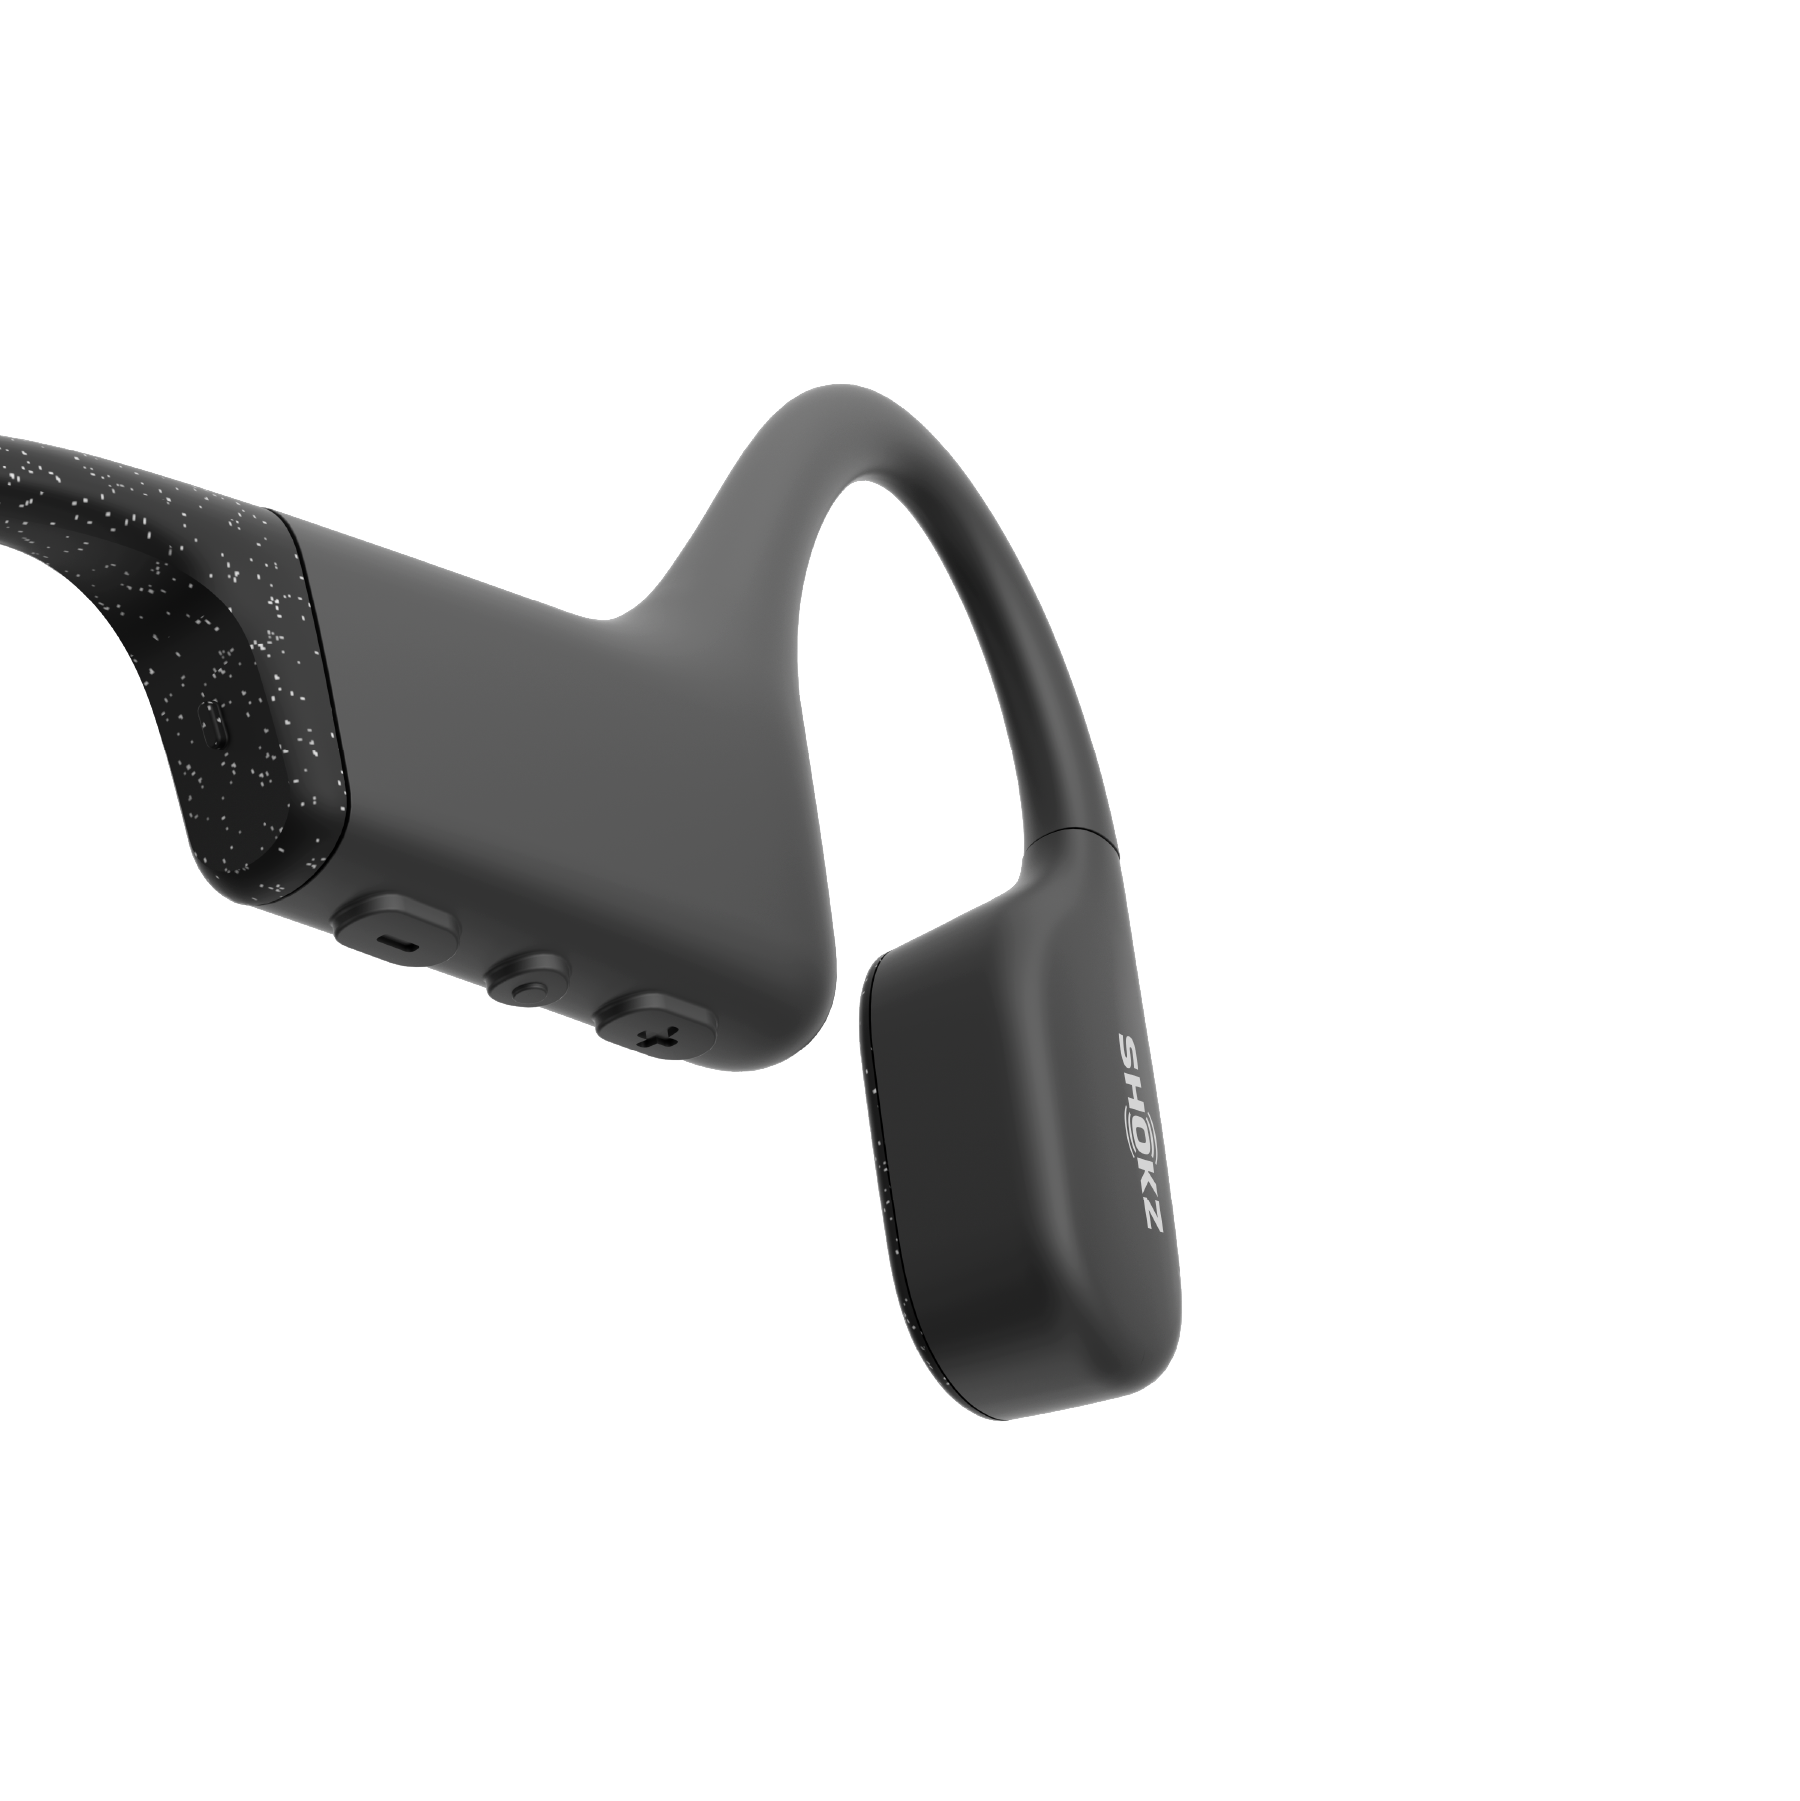 Shokz OpenRun Bone Conduction Waterproof Bluetooth Headphones for